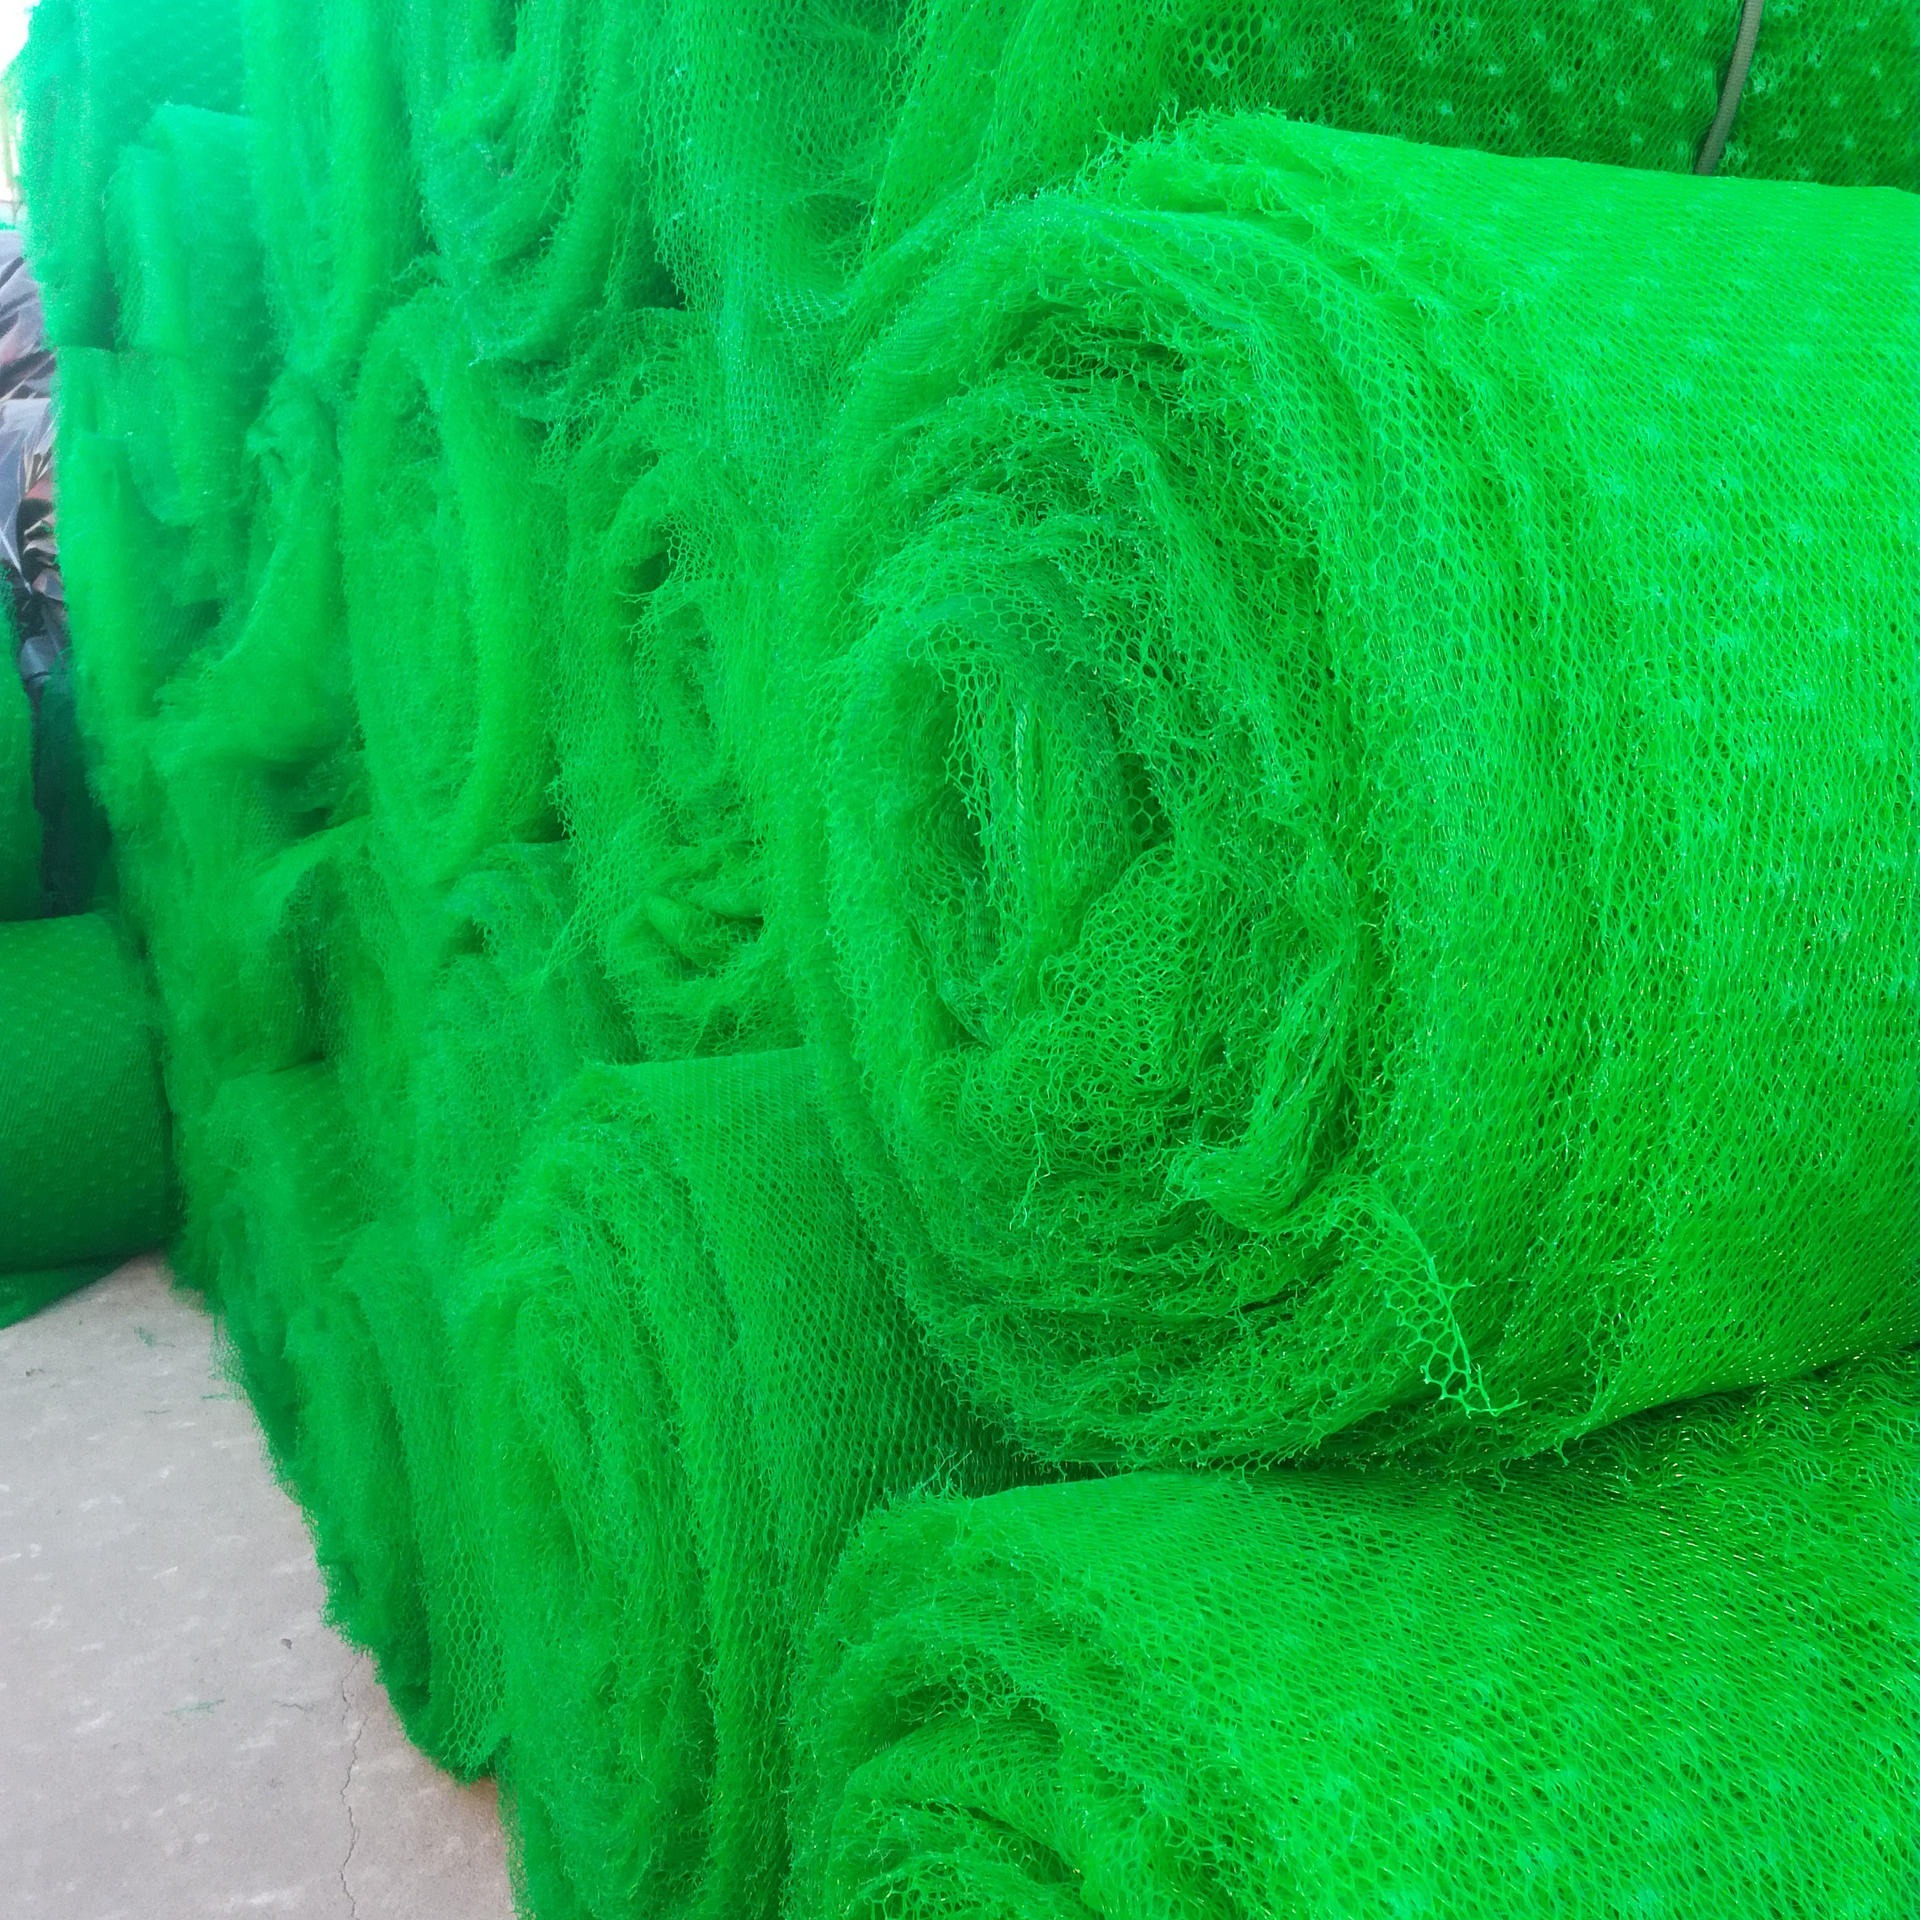 塑料三维植被网 绿色三维植被网 高品质三维植被网 质优价廉 联谊厂家承接批发